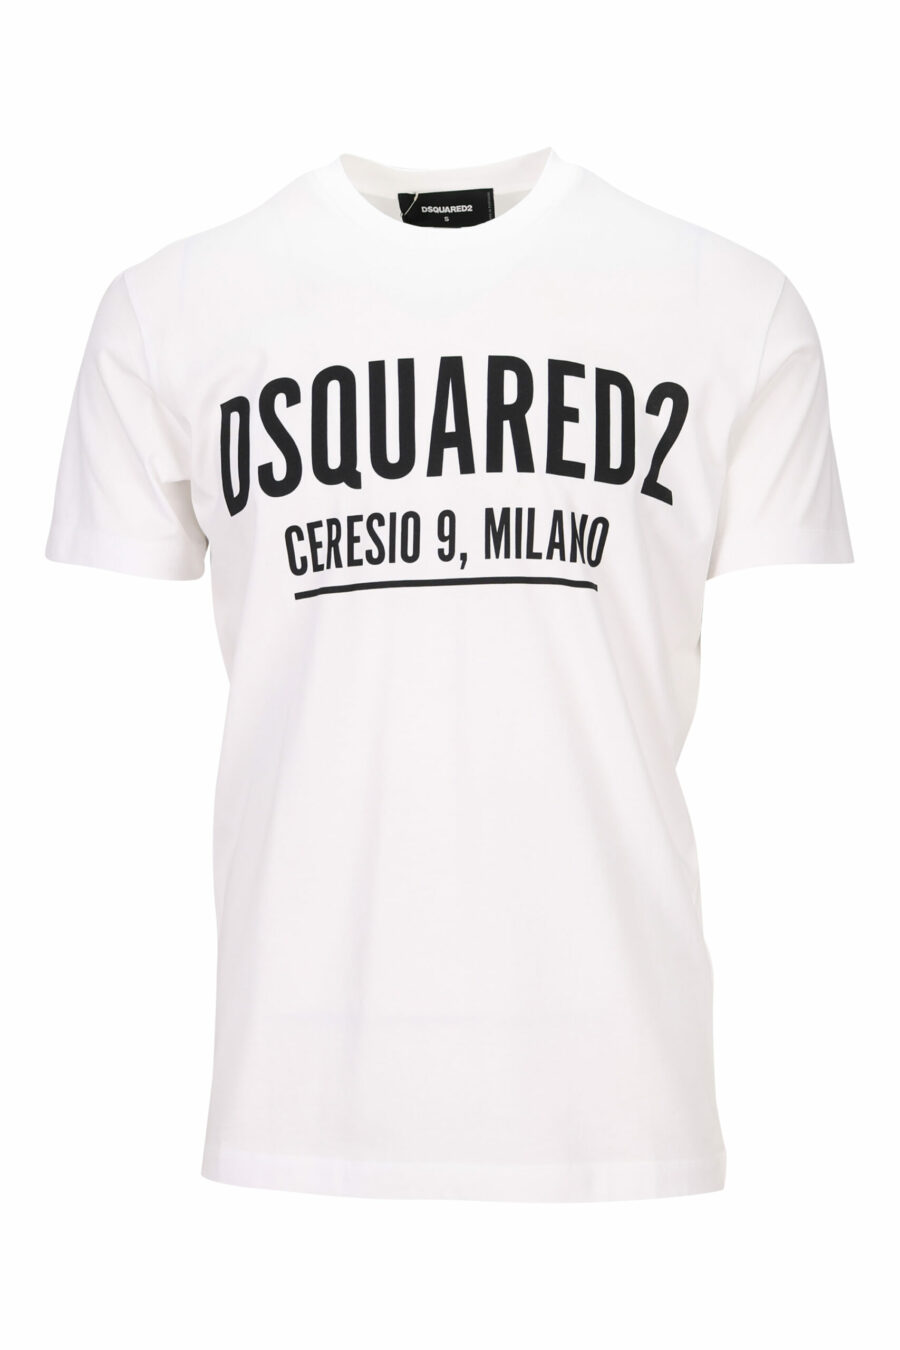 Weißes T-shirt mit Maxilogo "ceresio 9, milano" - 8054148504779 skaliert